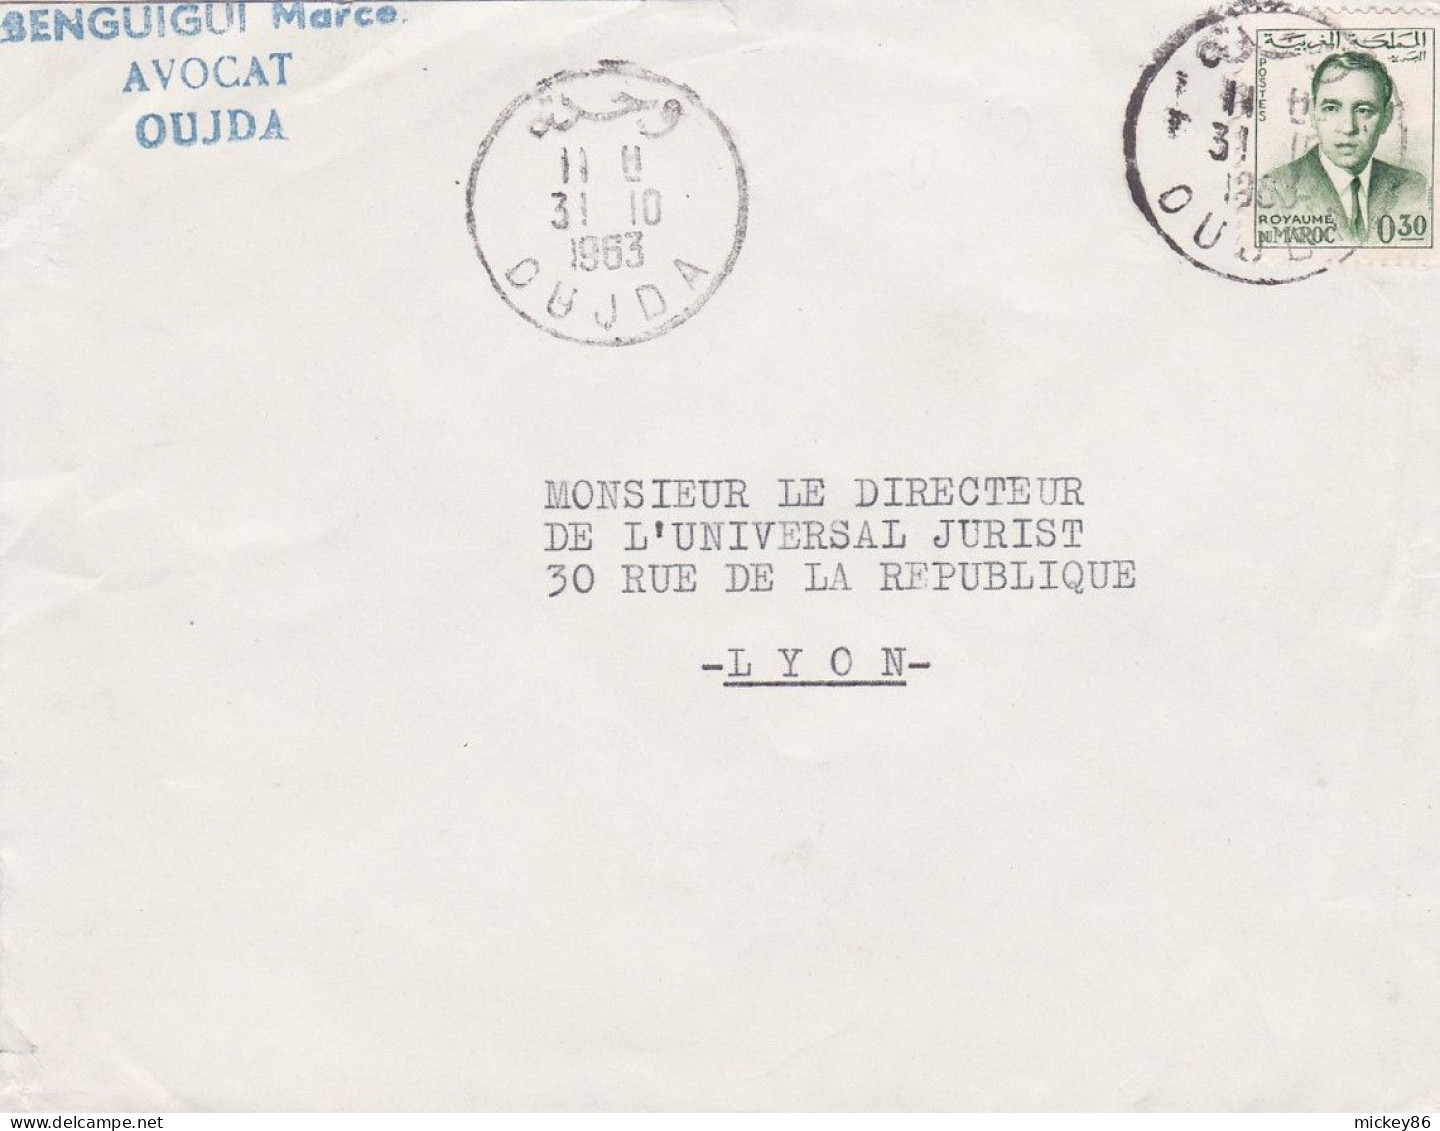 Maroc -1963--Lettre De OUJDA  Pour LYON-69 (France) .timbre Seul Sur Lettre...Beau Cachet...personnalisée BENGUIGUI - Marruecos (1956-...)